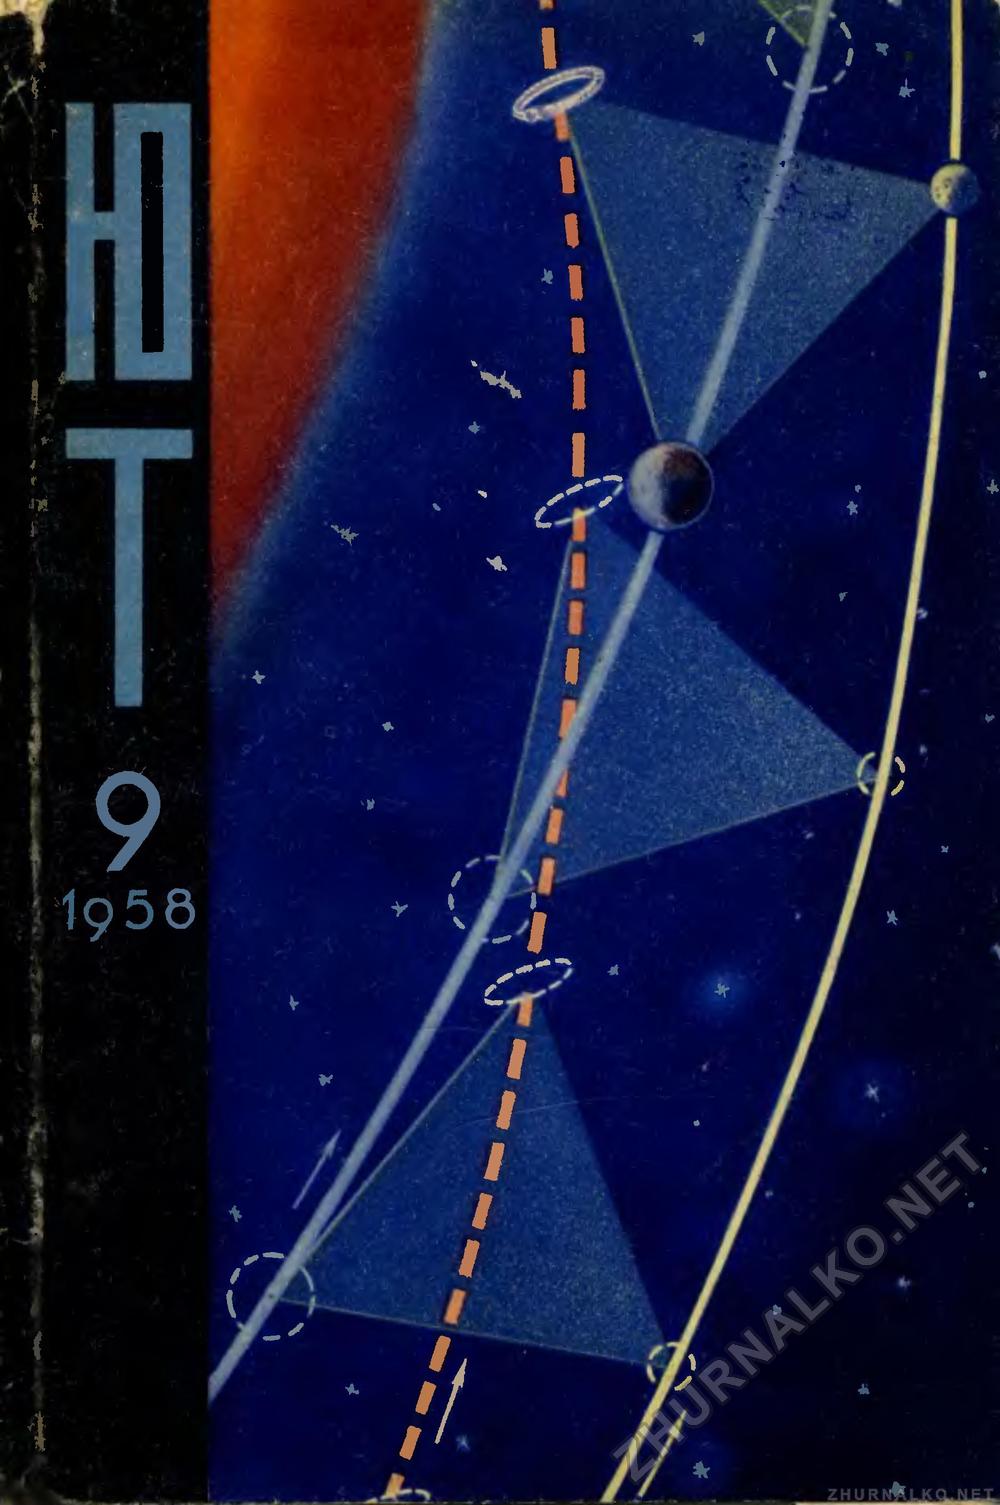   1958-09,  1